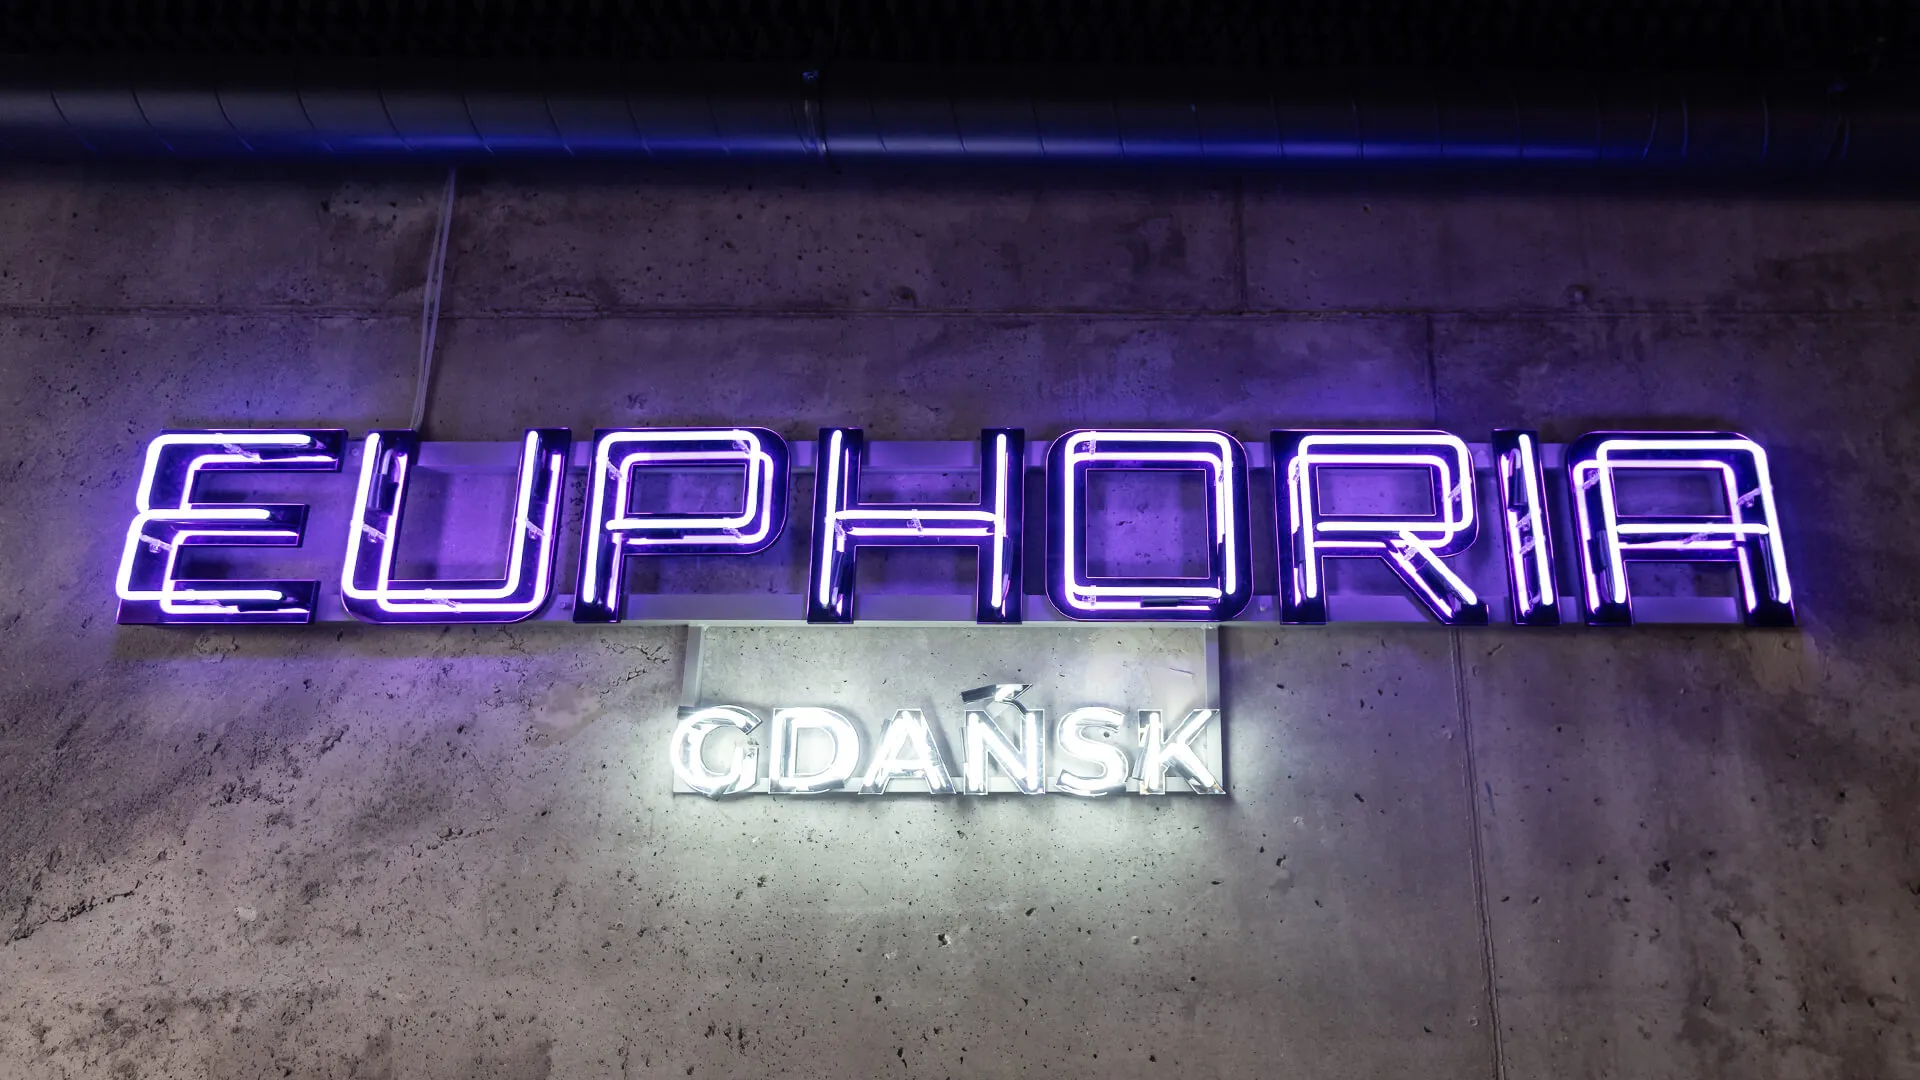 Euforia Gdansk - letrero de neón sobre el bar en color morado